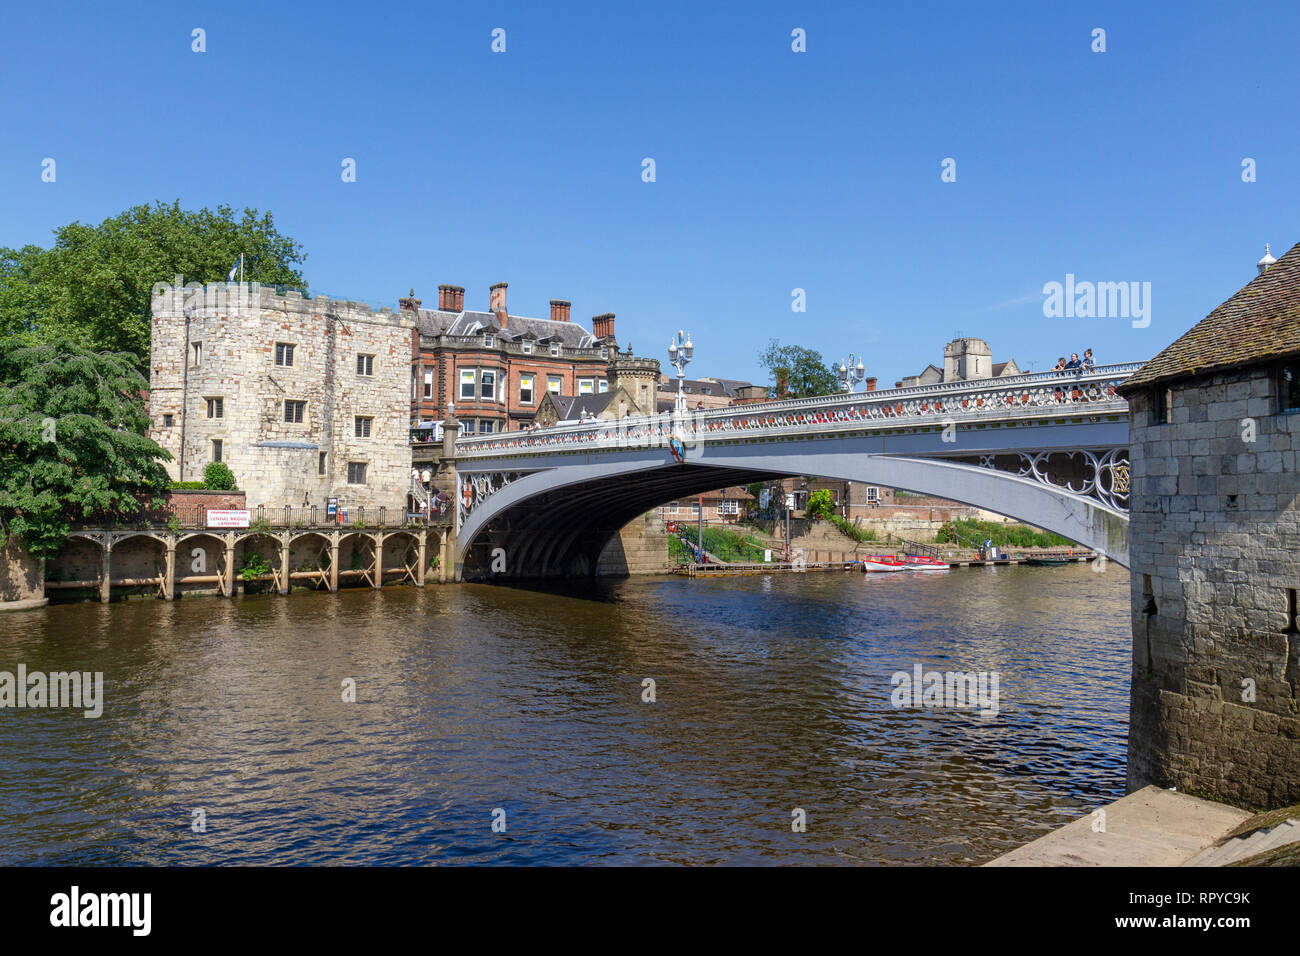 The River Ouse running under Lendal Bridge, City of York, UK. Stock Photo